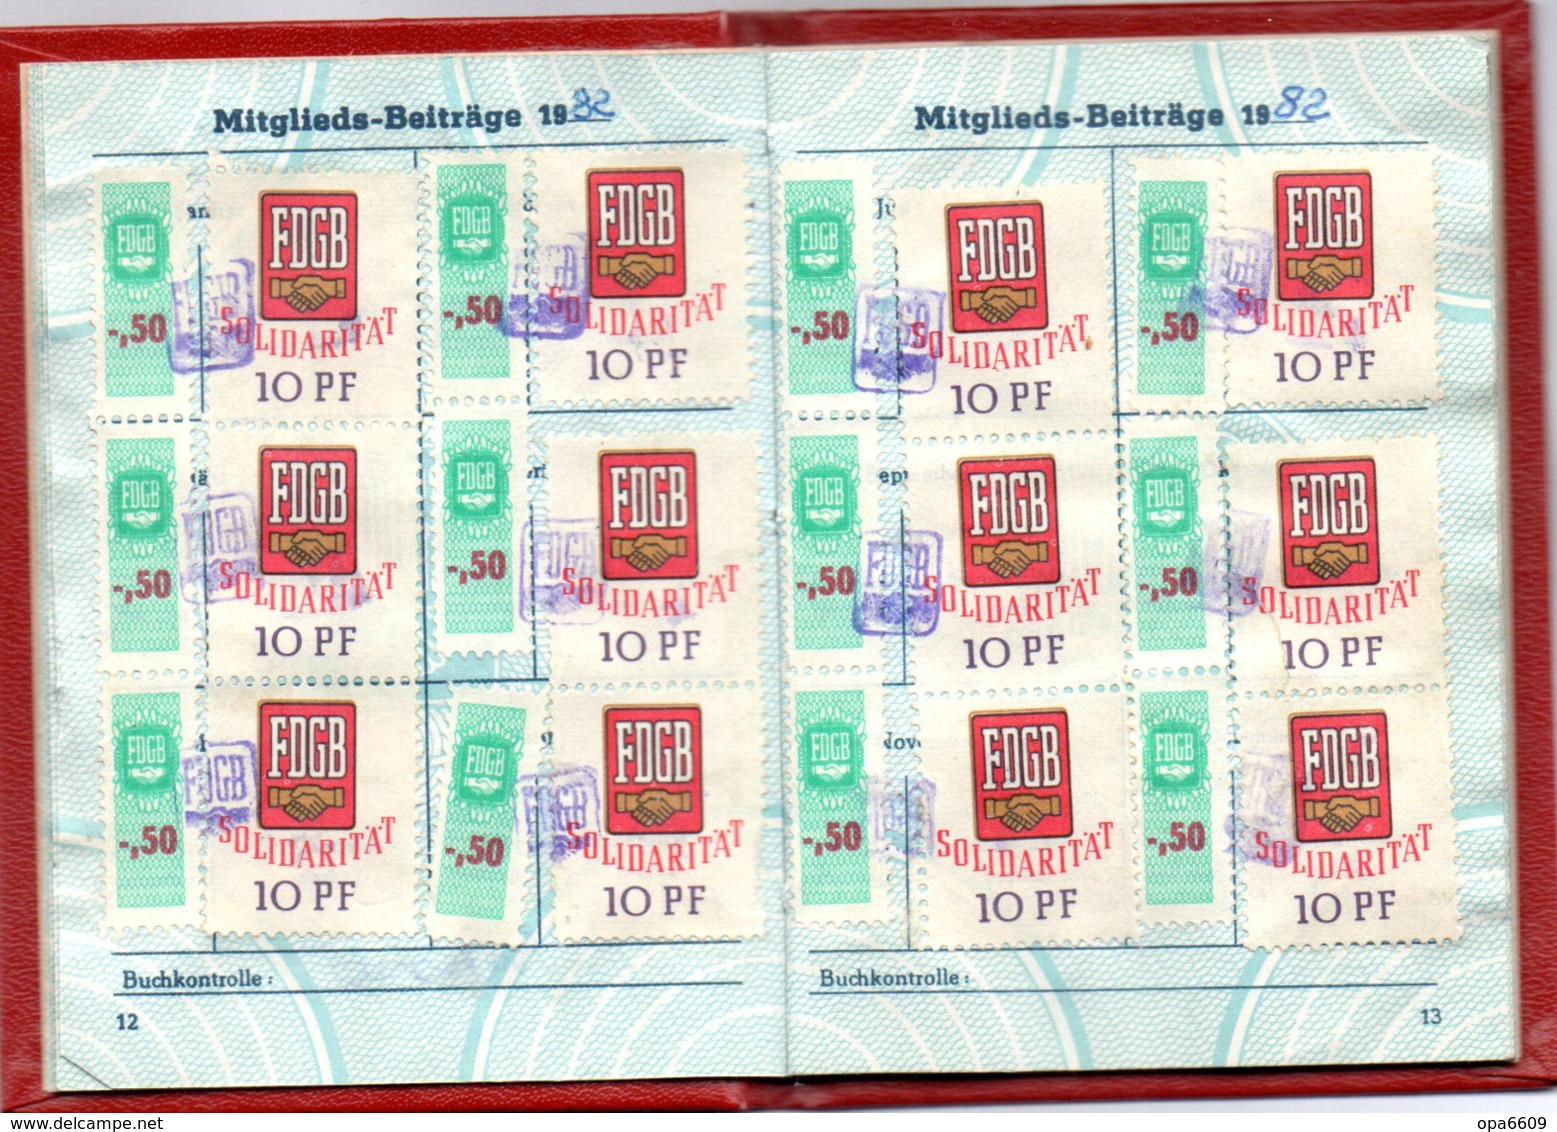 (Kart-ZD) DDR MITGLIEDSBUCH "FDGB - Freier Deutscher Gewerkschaftsbund" ausgest. Görlitz 10.6.1980 bis 1989